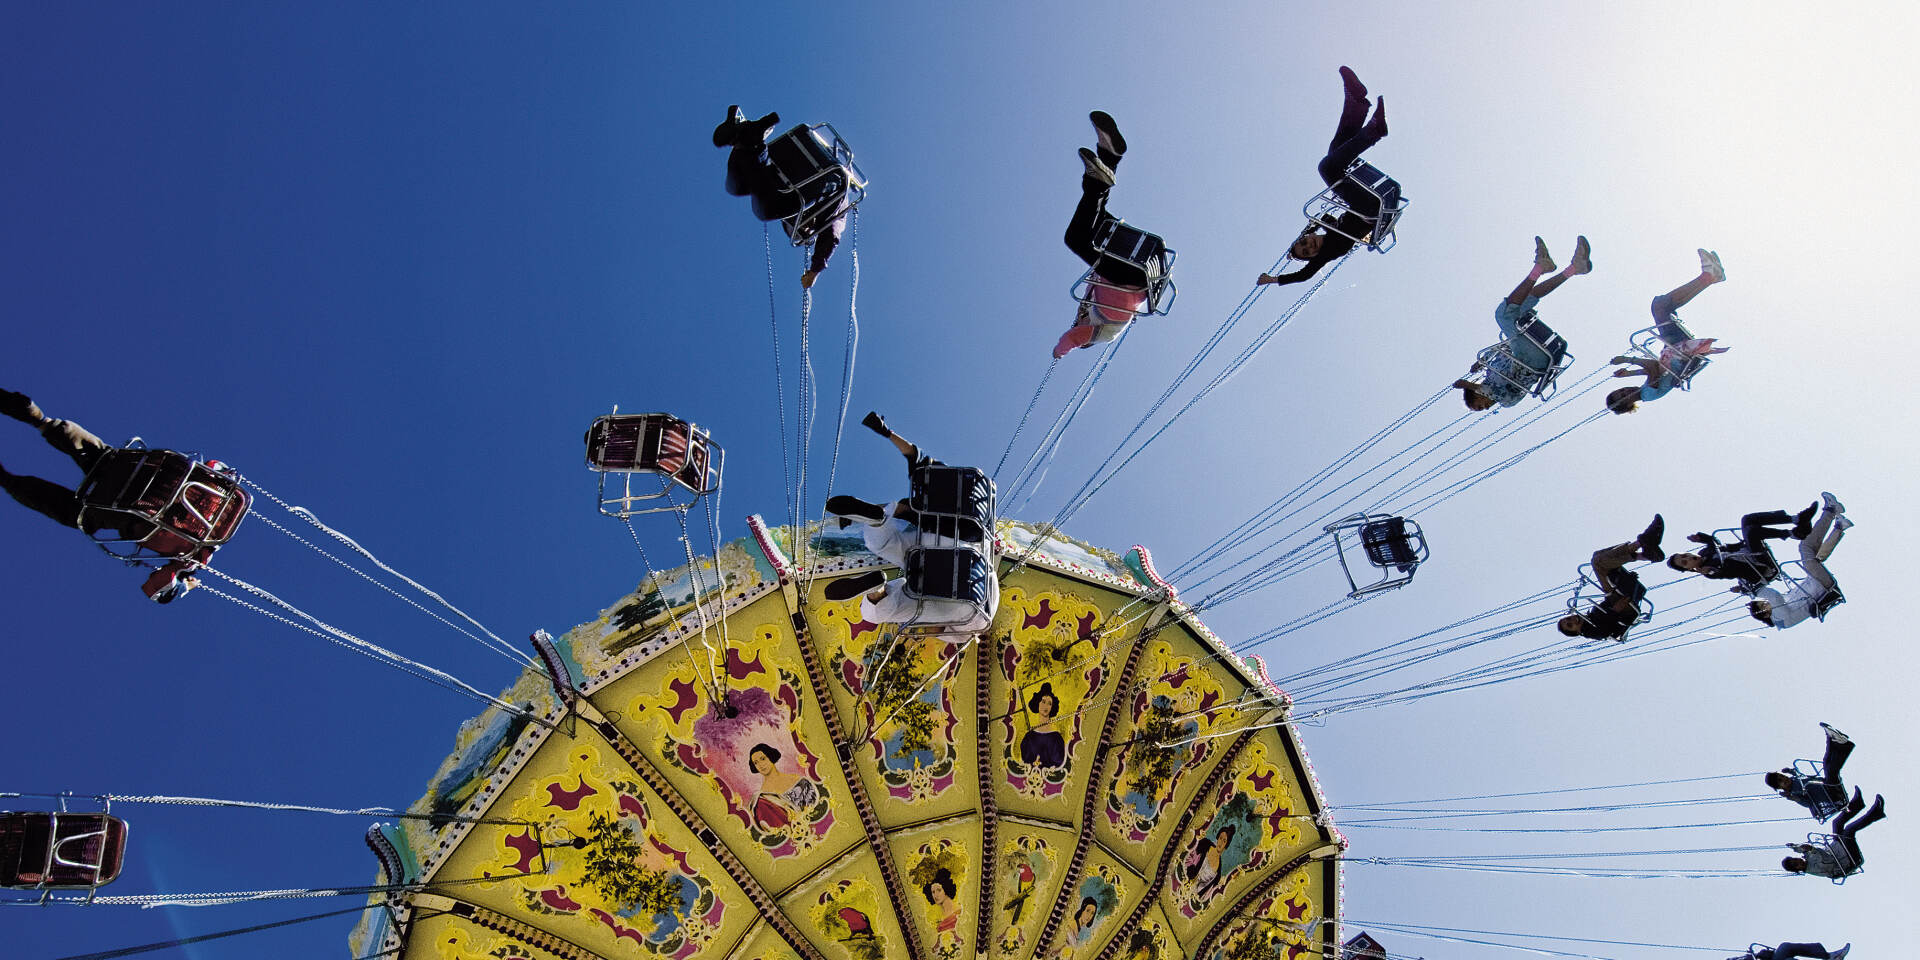 Vienna Prater park - merry-go-round © WienTourismus | Karl Thomas